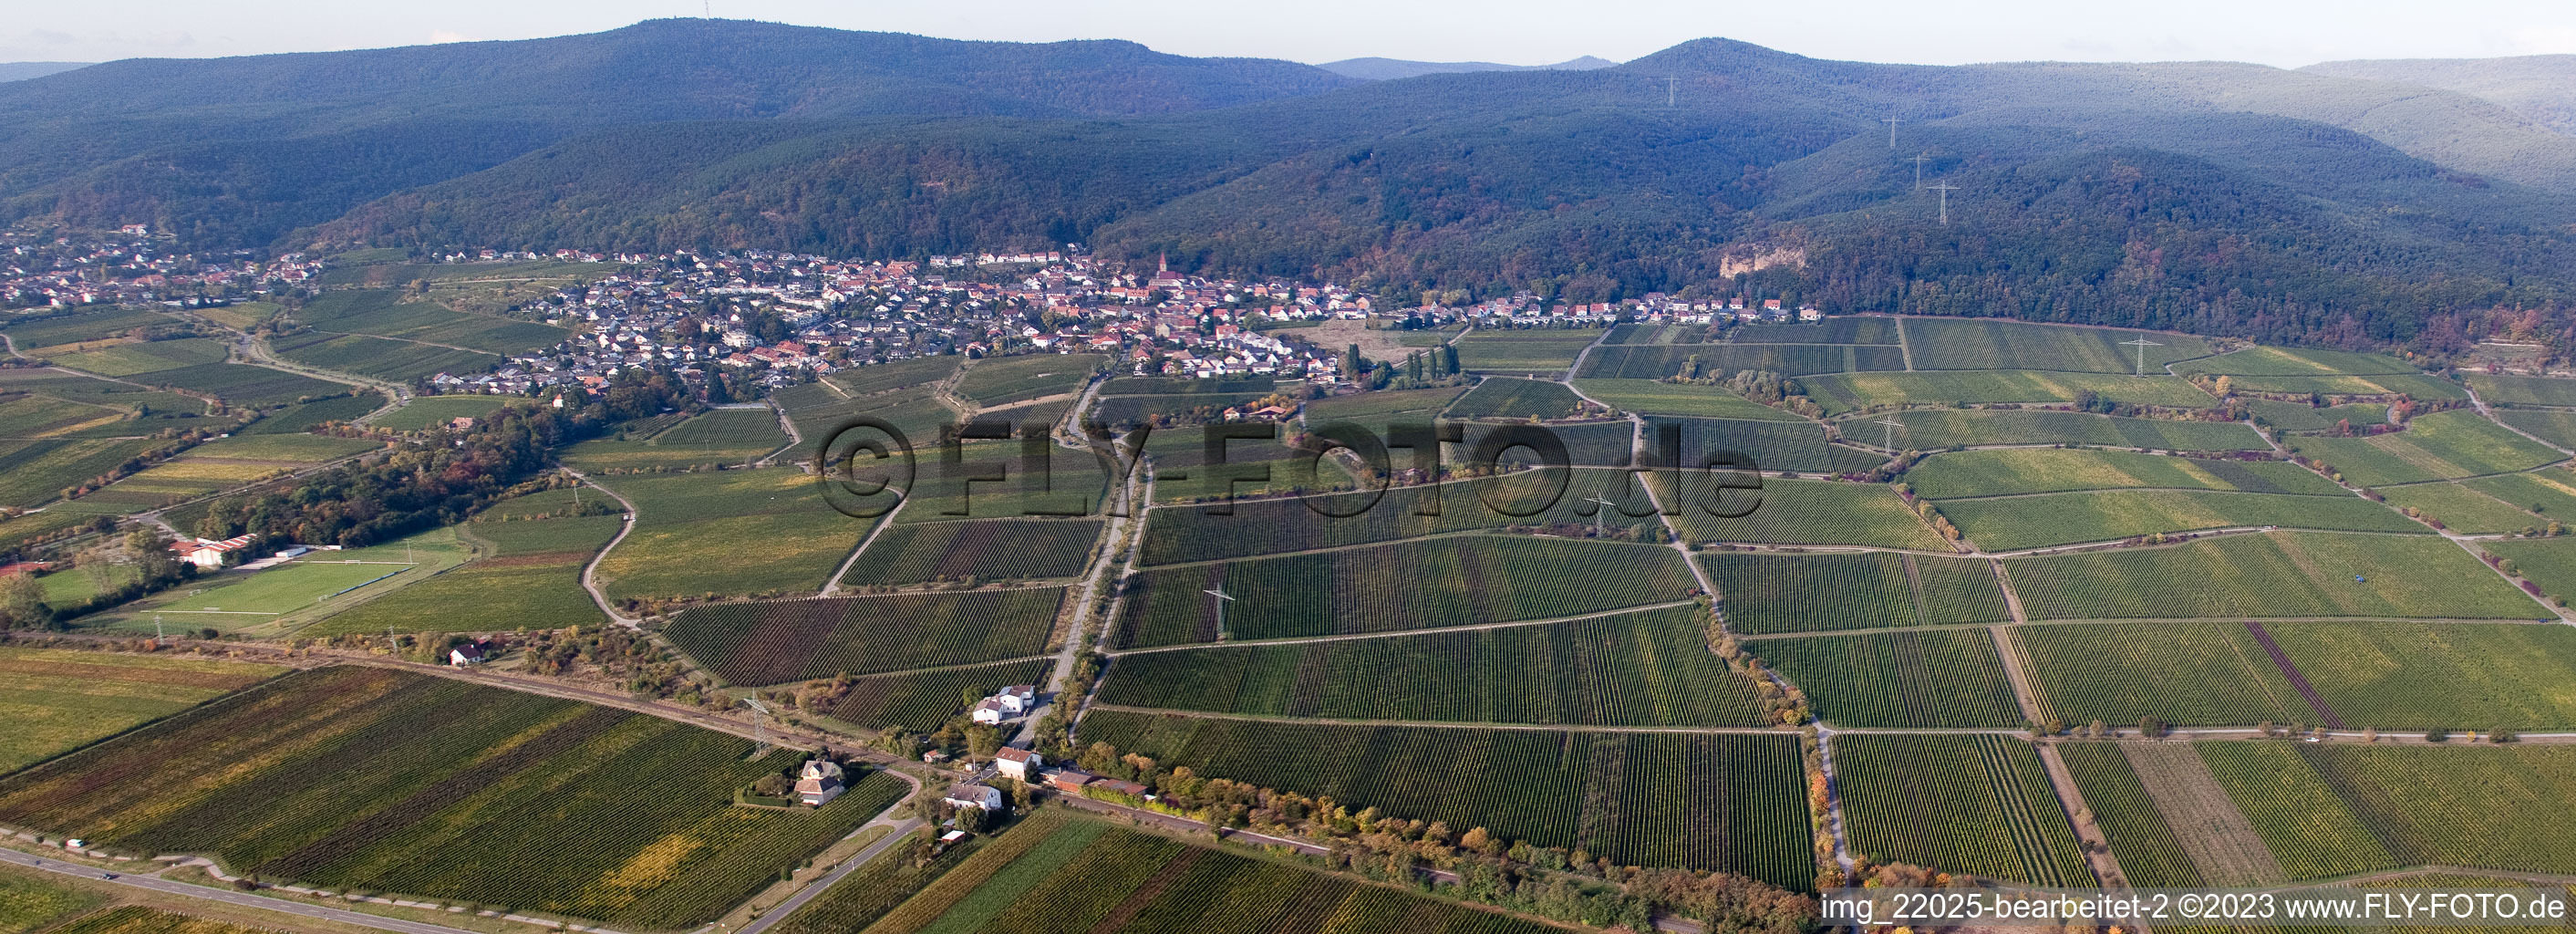 Ortsteil Königsbach in Neustadt an der Weinstraße im Bundesland Rheinland-Pfalz, Deutschland vom Flugzeug aus